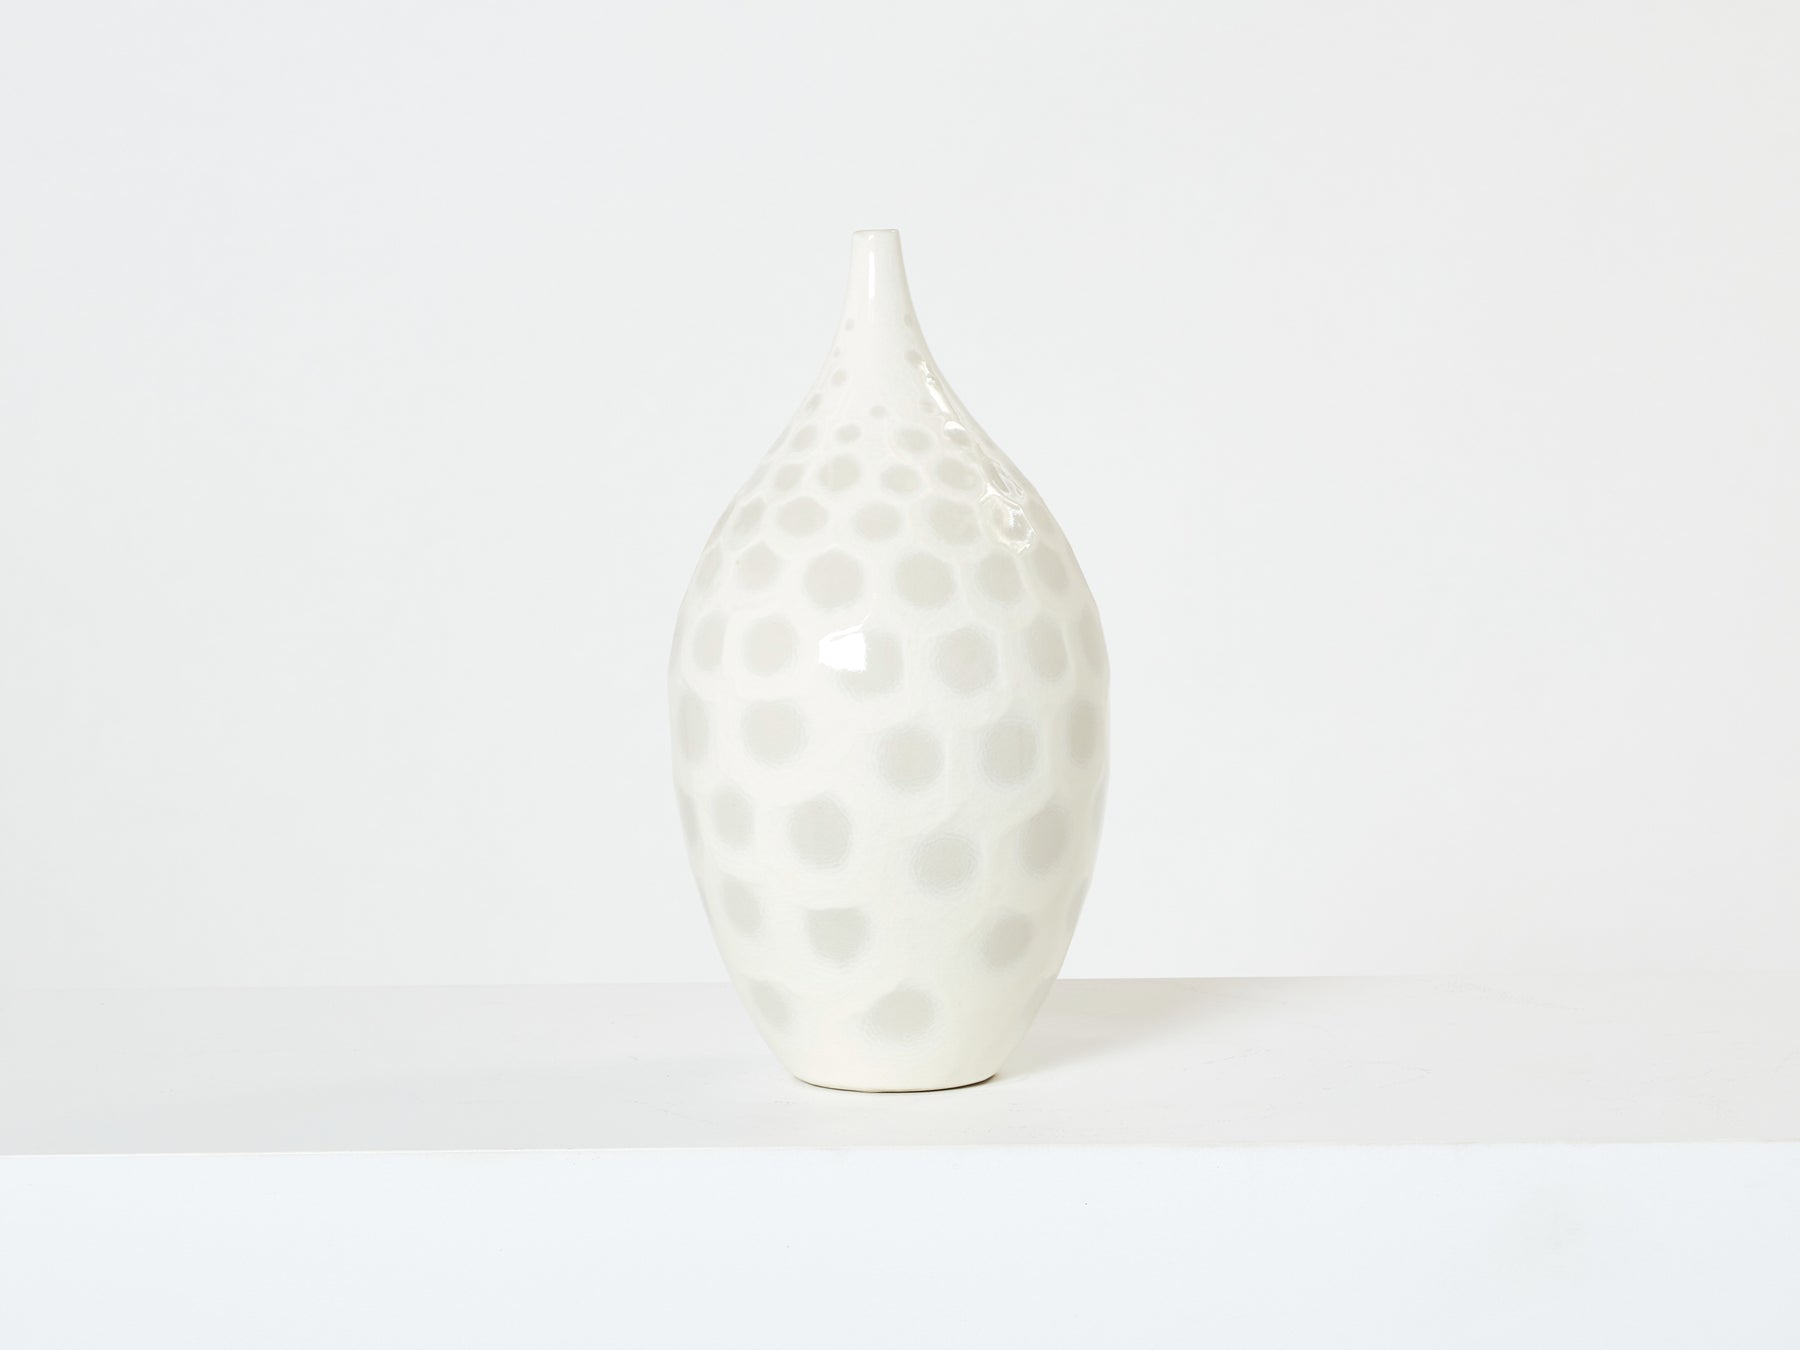 Large off white crackle glaze ceramic vase by Habitat 1980s